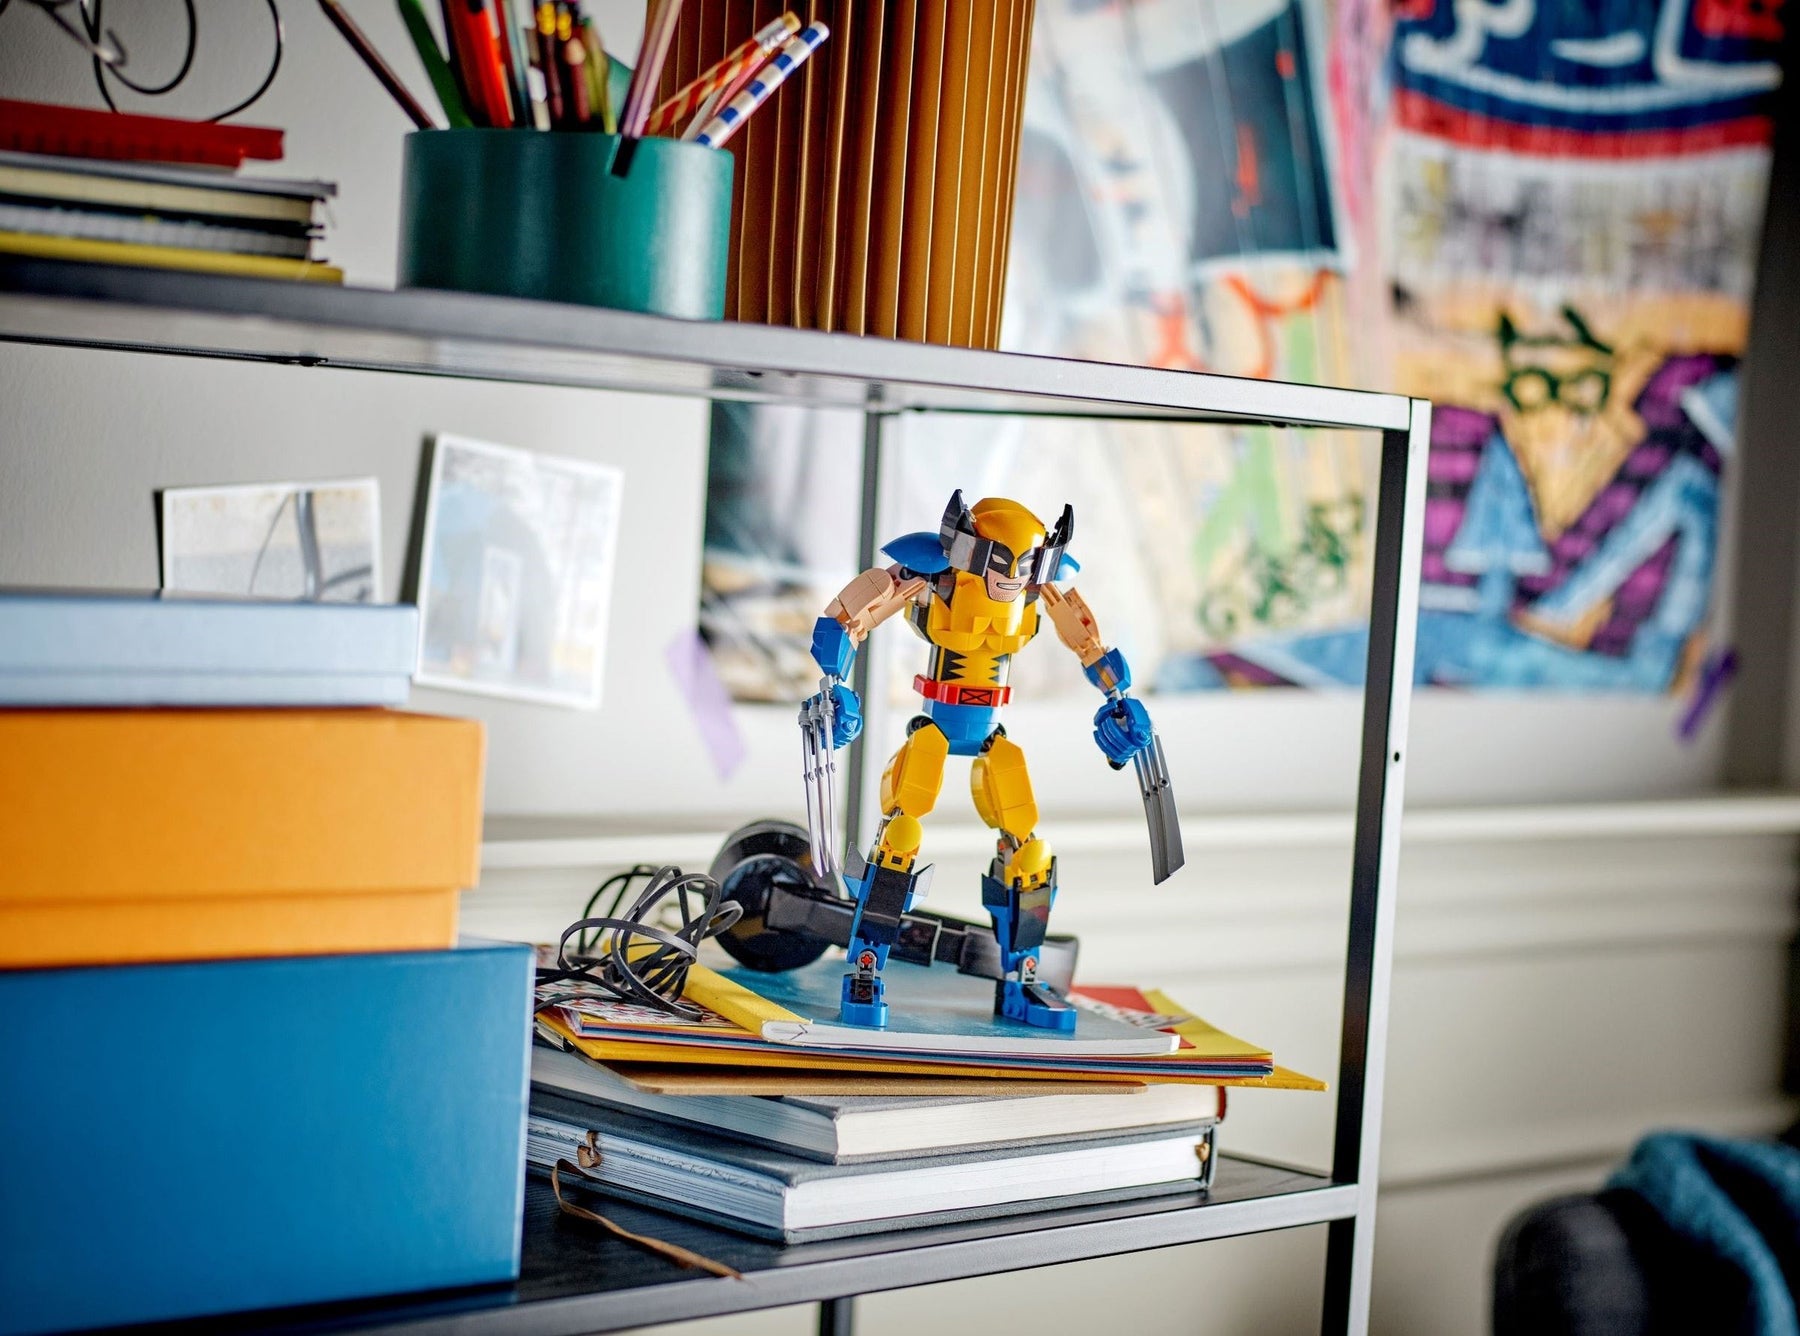 LEGO Marvel Studios 76257 Rakennettava Wolverine-hahmo